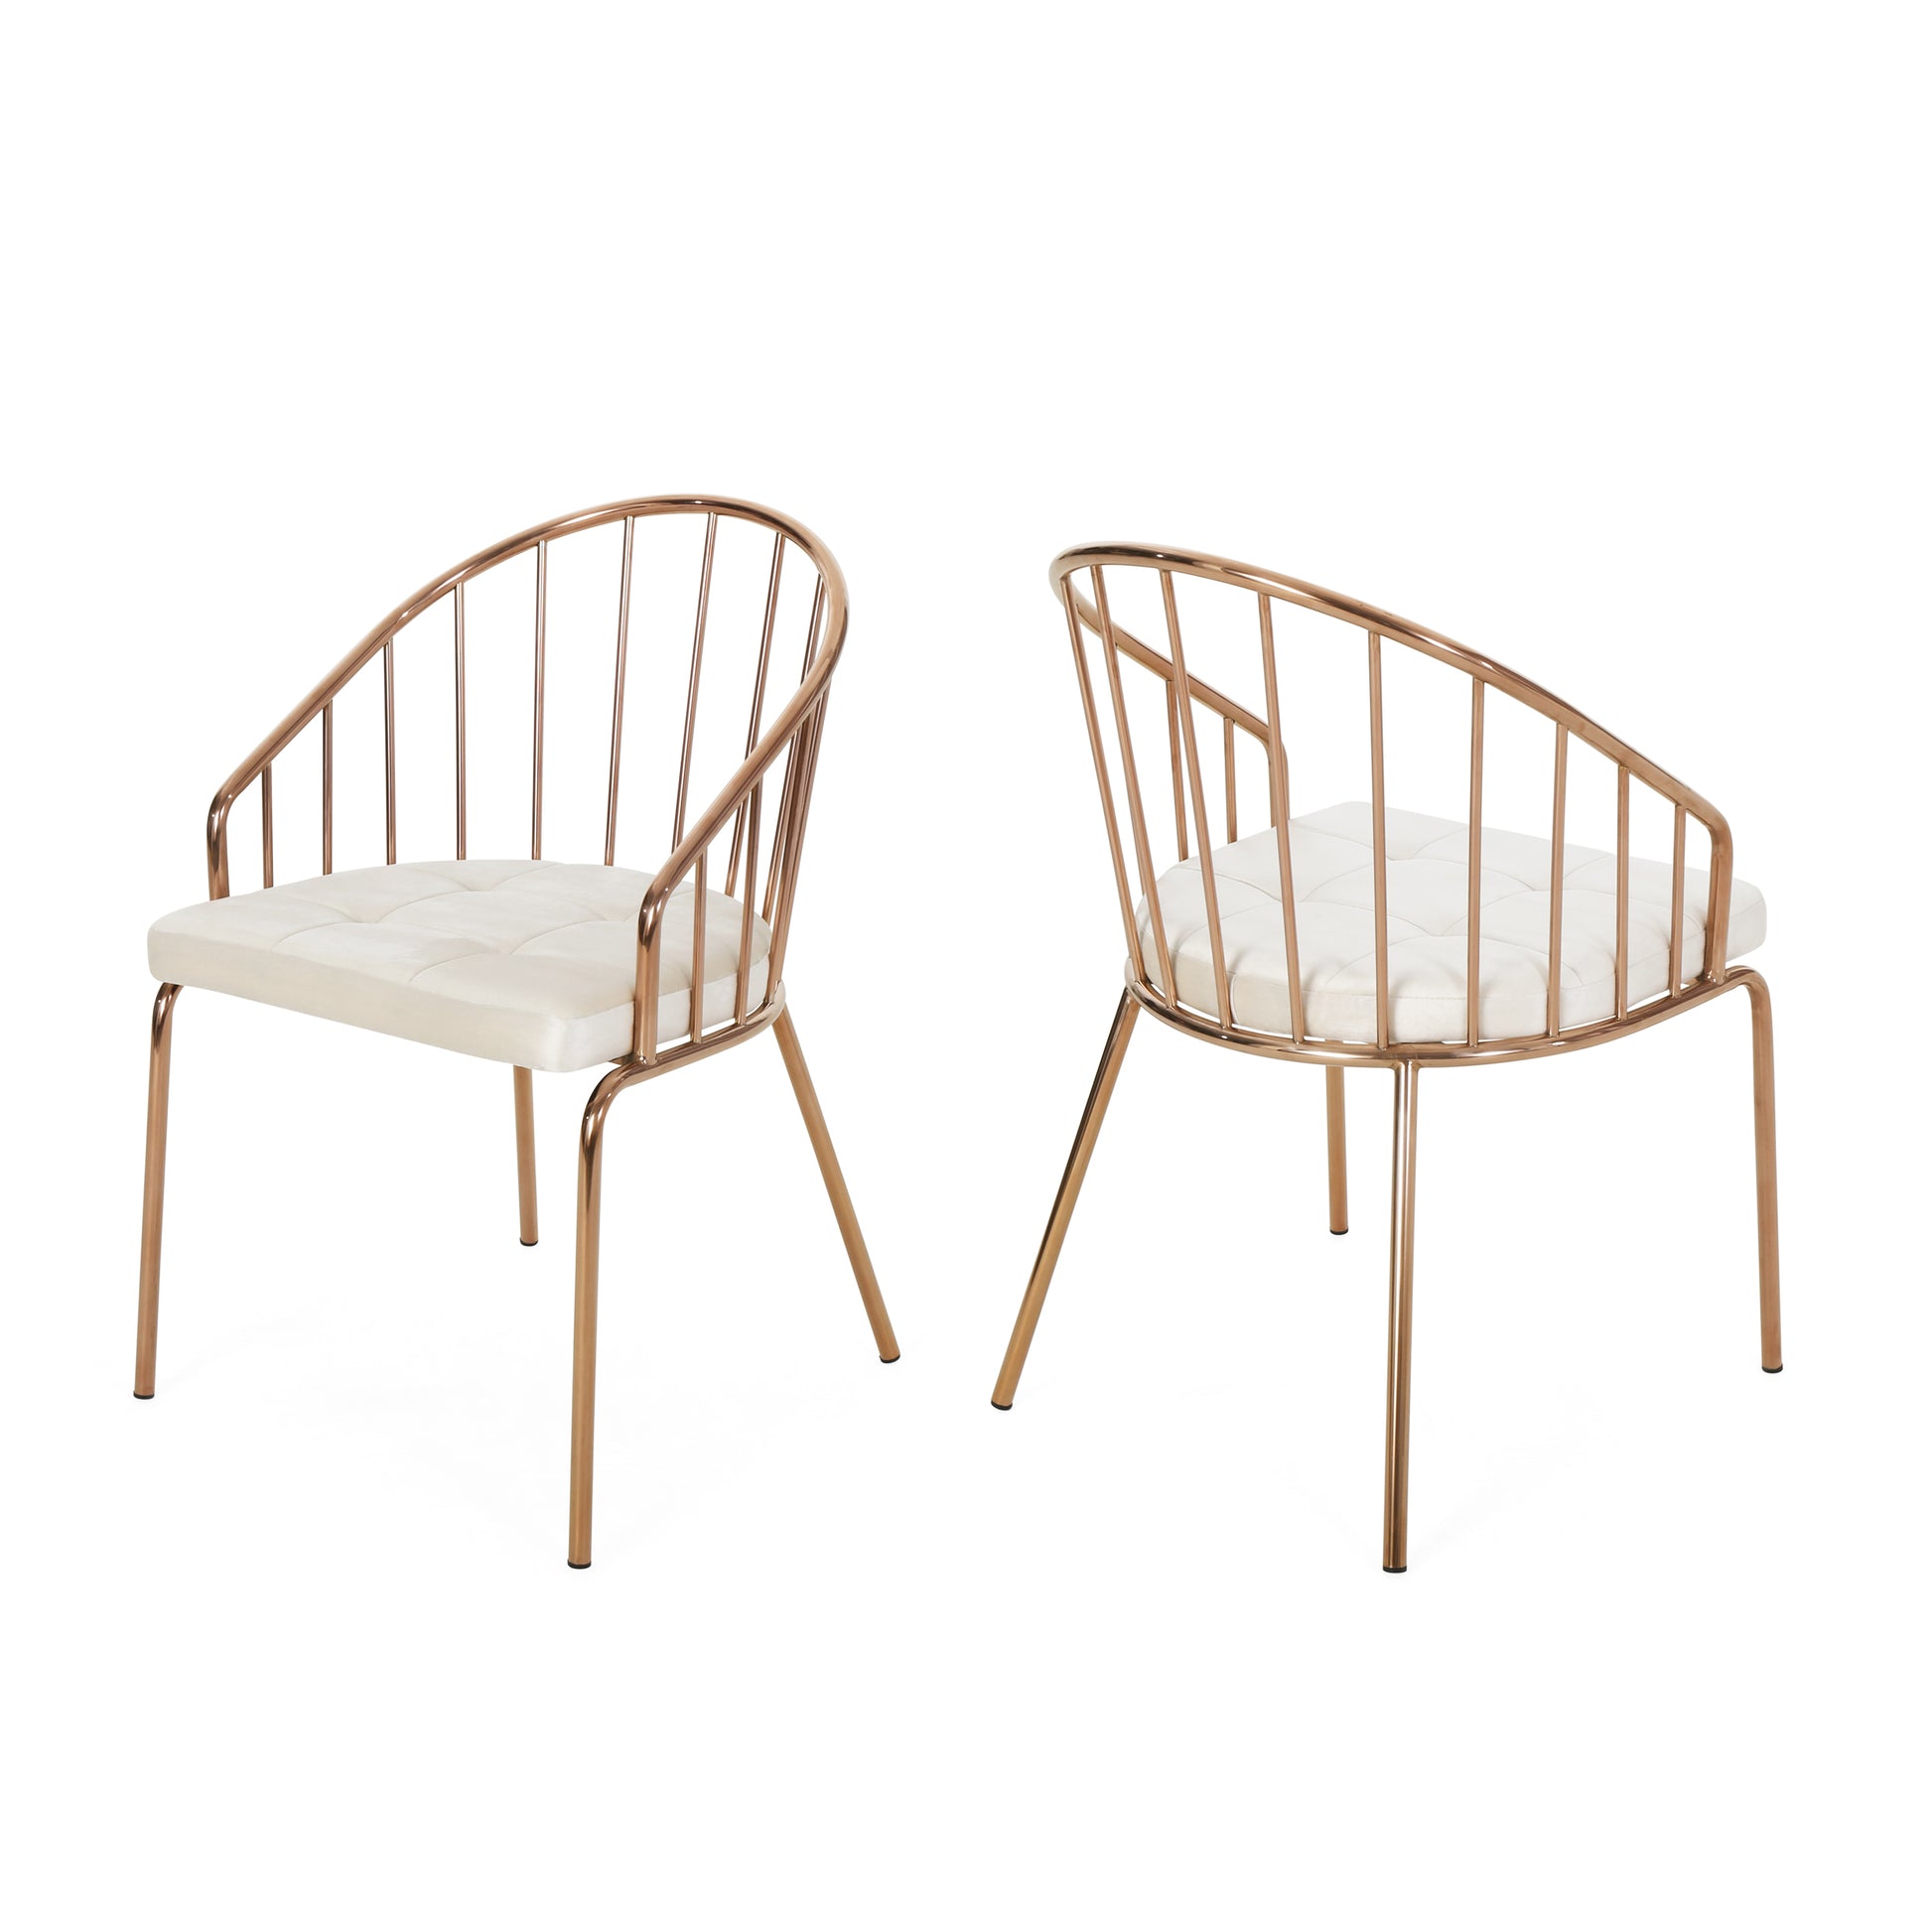 Stainless Chromed Dining Chair - Beige Velvet